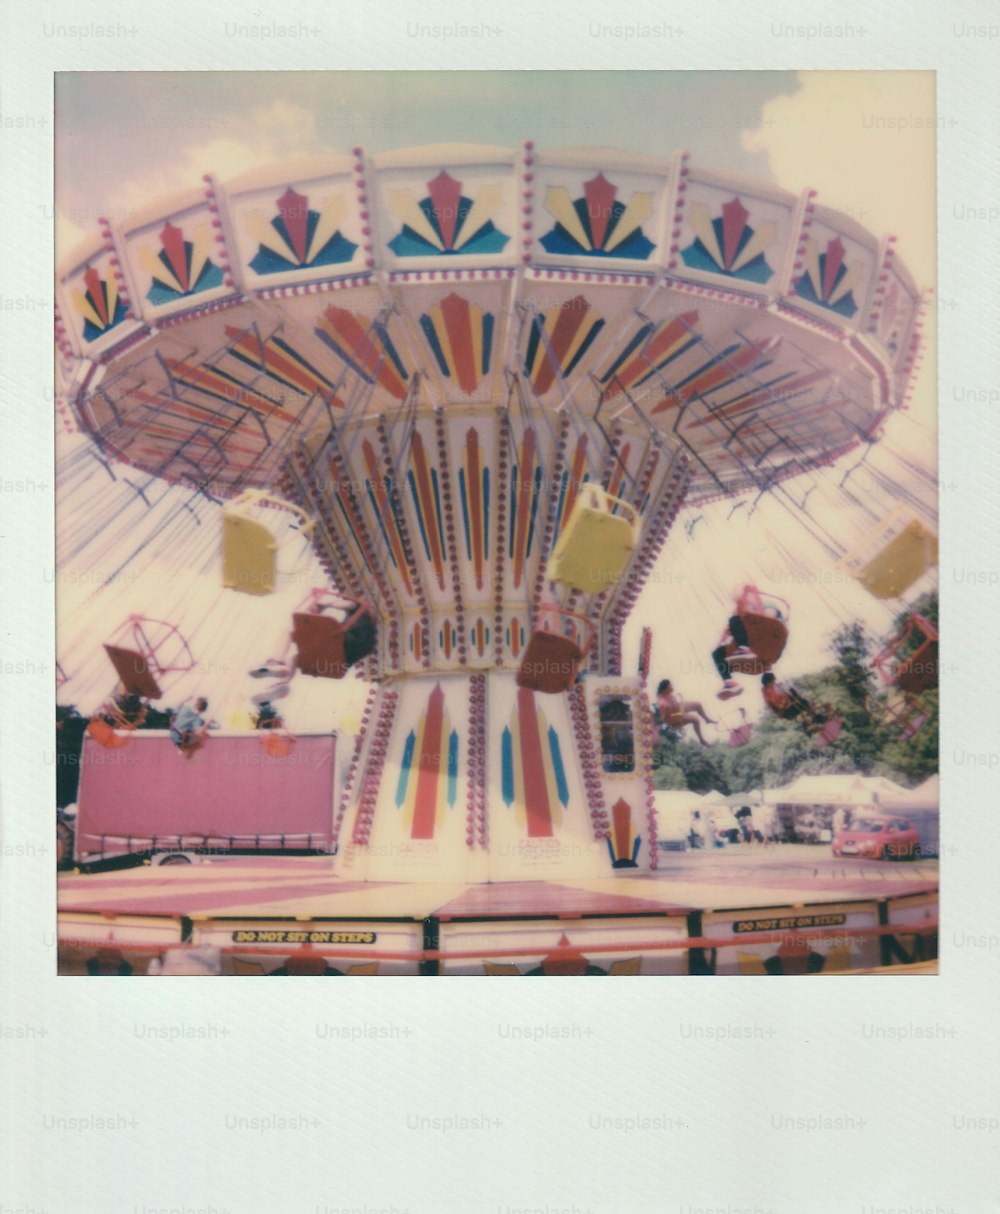 Uma foto antiga de um passeio de carnaval